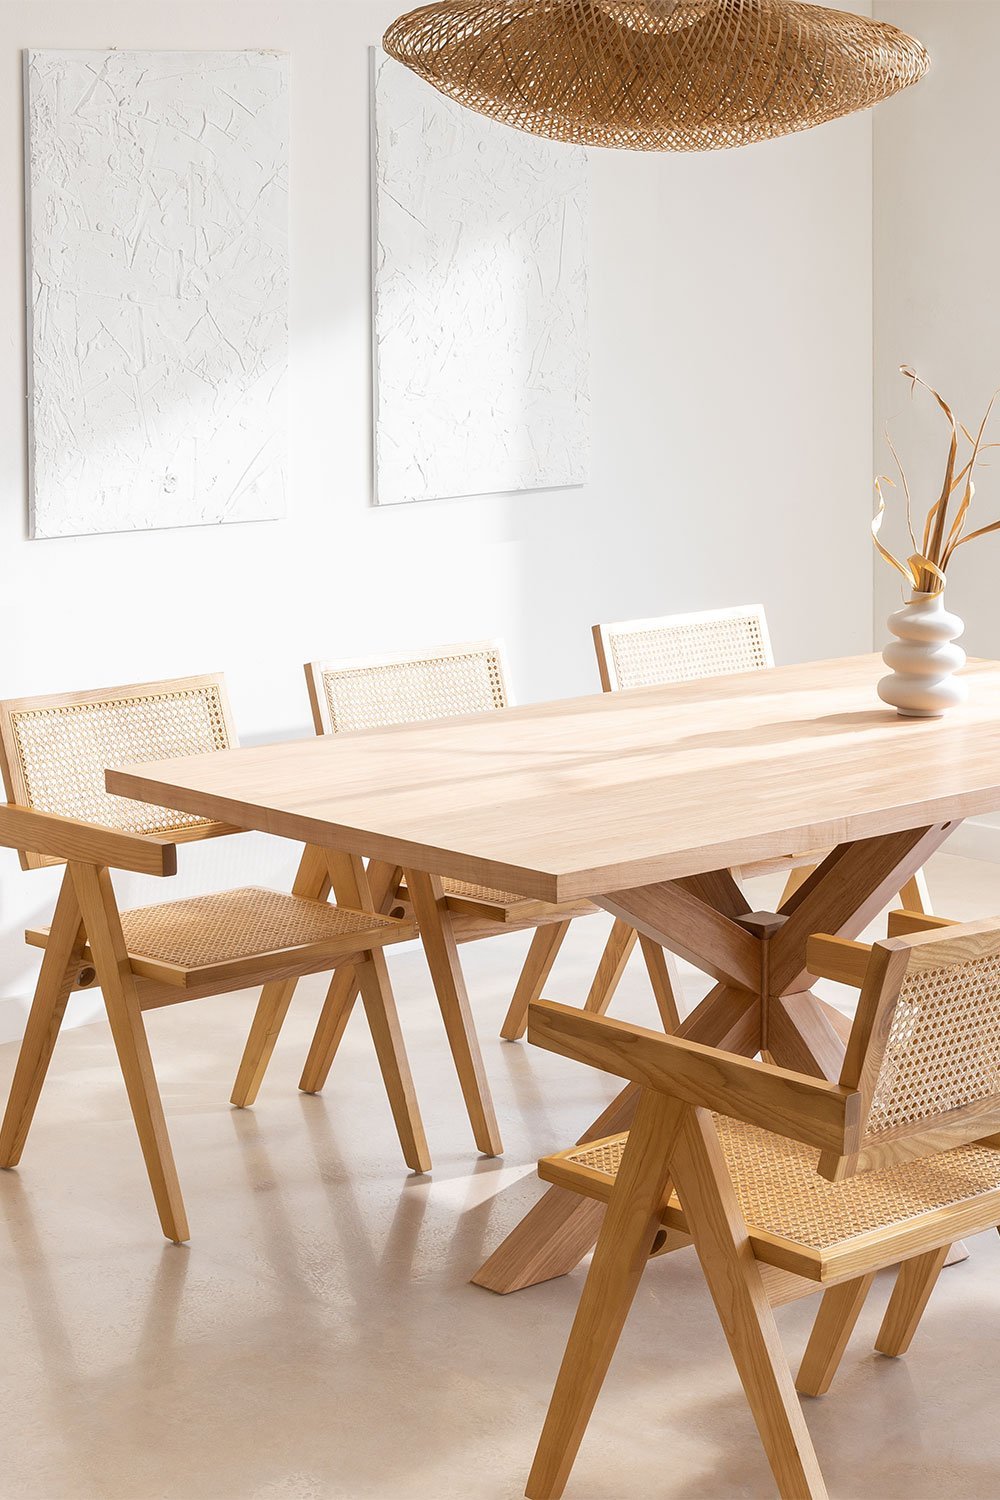 Prostokątny stół do jadalni z płyty MDF (180x100 cm) Pleven i 6 krzeseł z podłokietnikami z drewna jesionowego i rattanu w stylu, obrazek w galerii 1